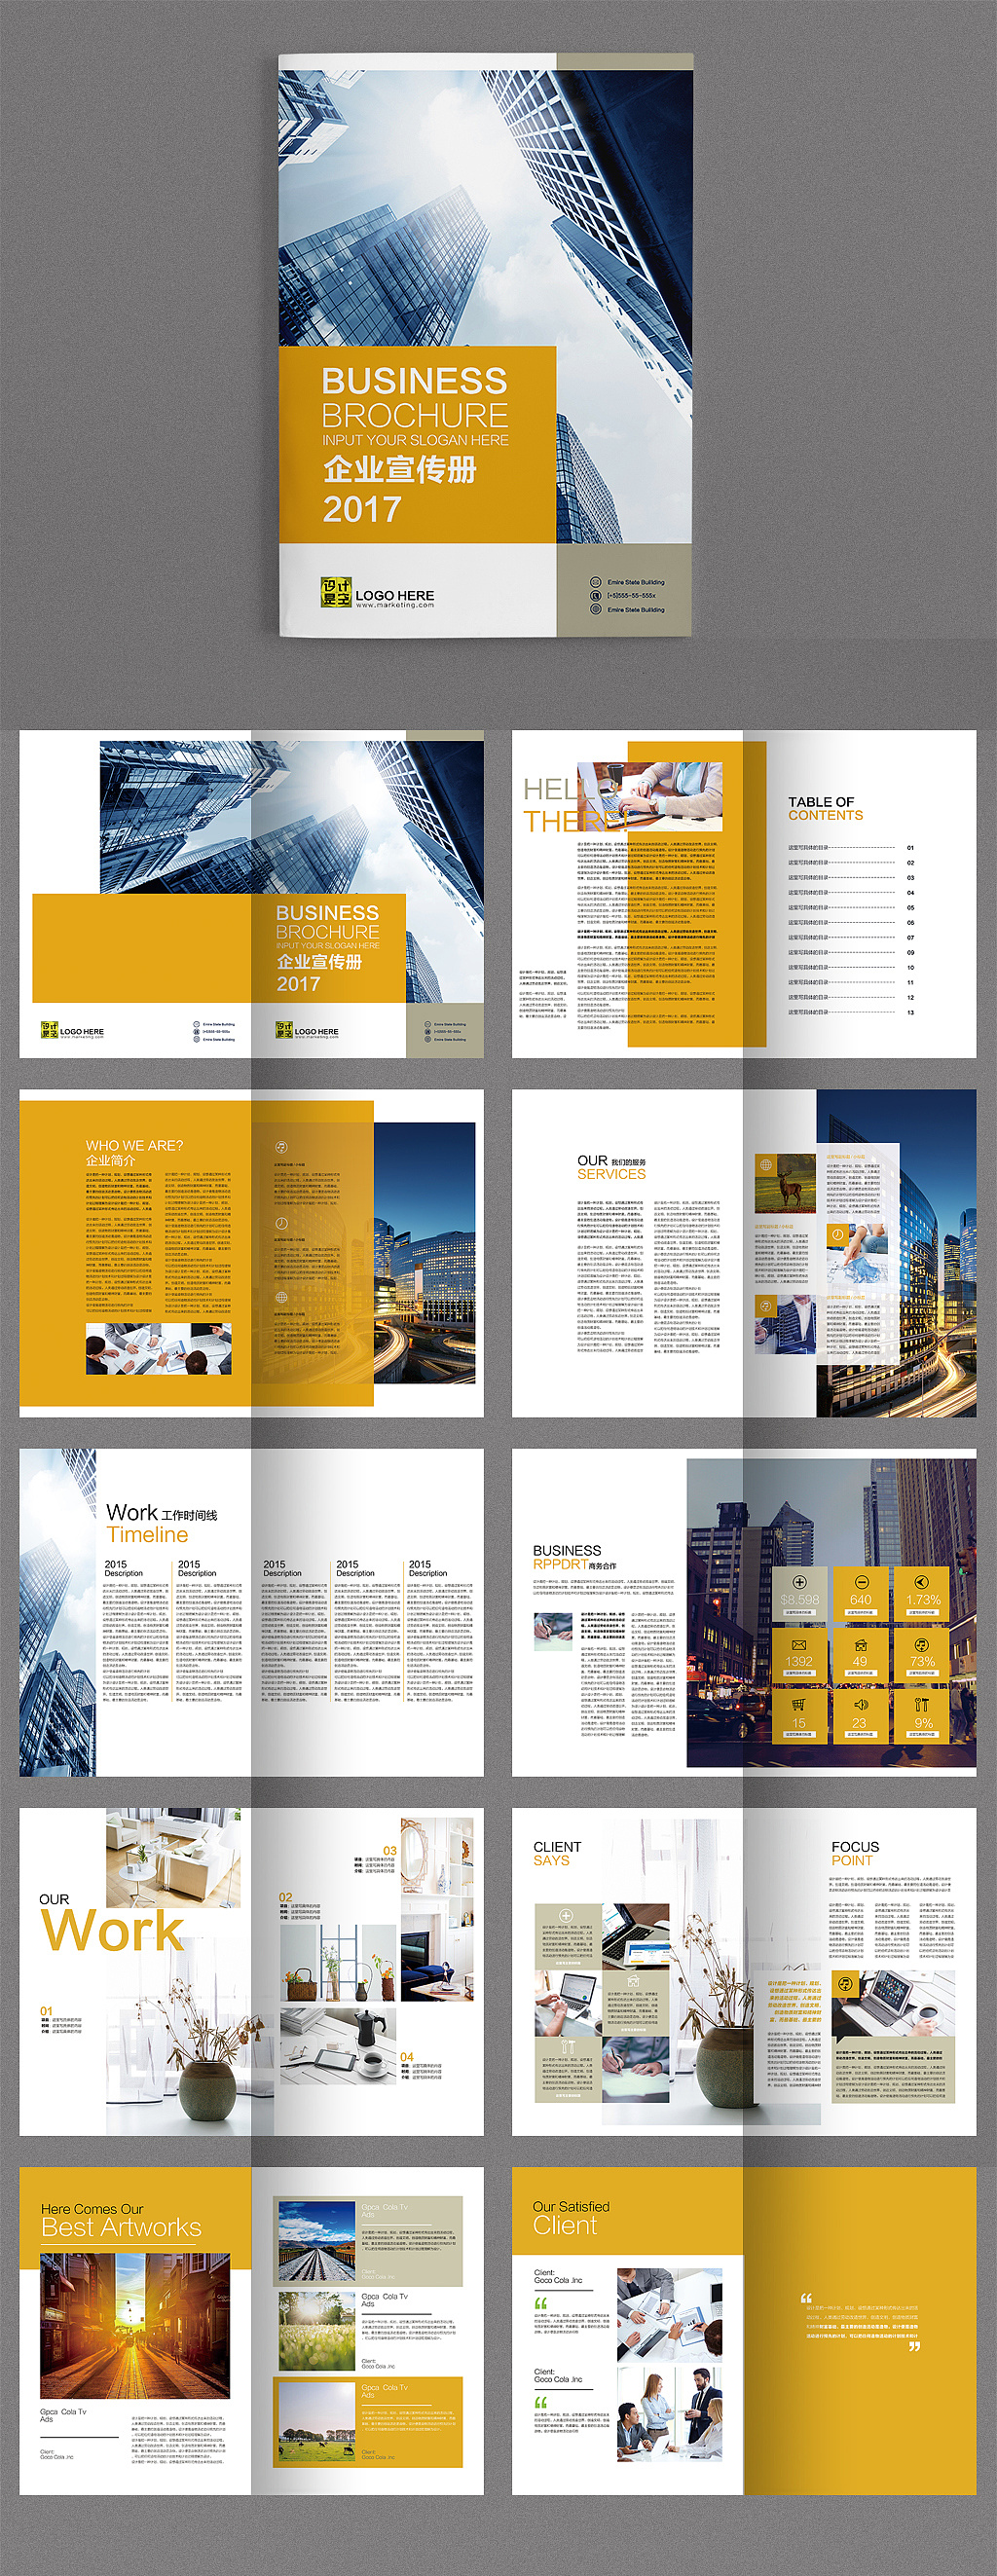 43套企业宣传册产品画册杂志排版作品集上海品牌策划设计公司